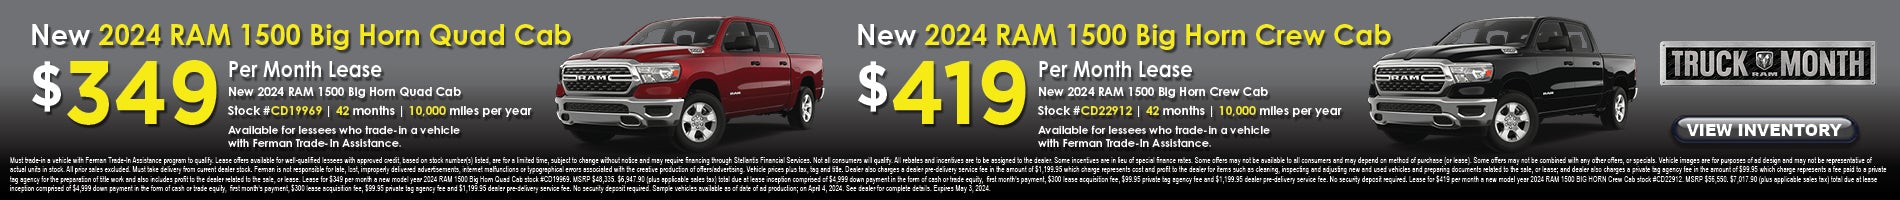 April Deals on New 2024 RAM 1500 Big Horn